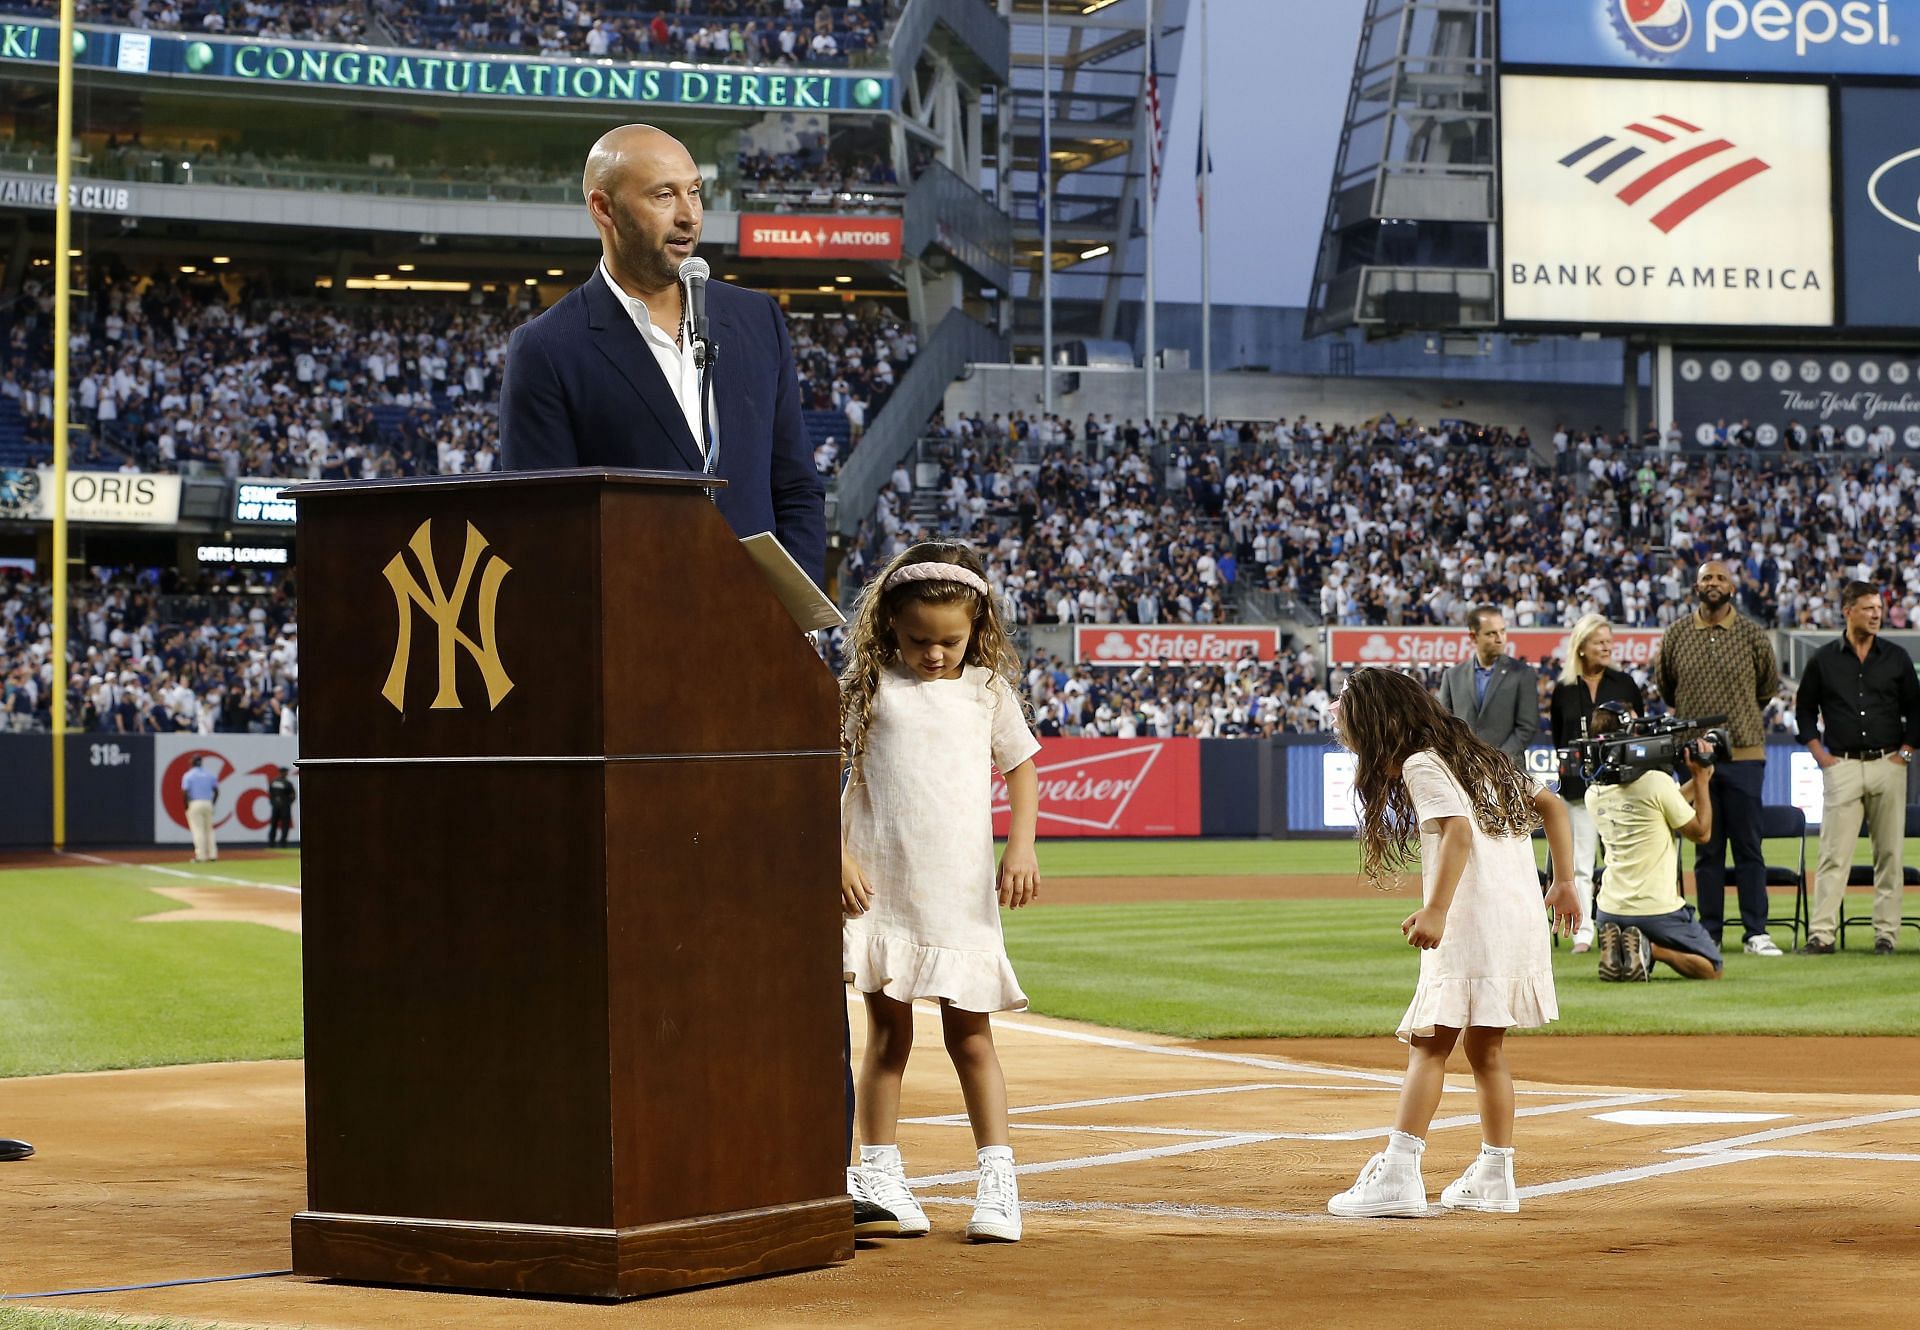 Derek Jeter ended pitcher's career in famous Yankees Stadium farewell